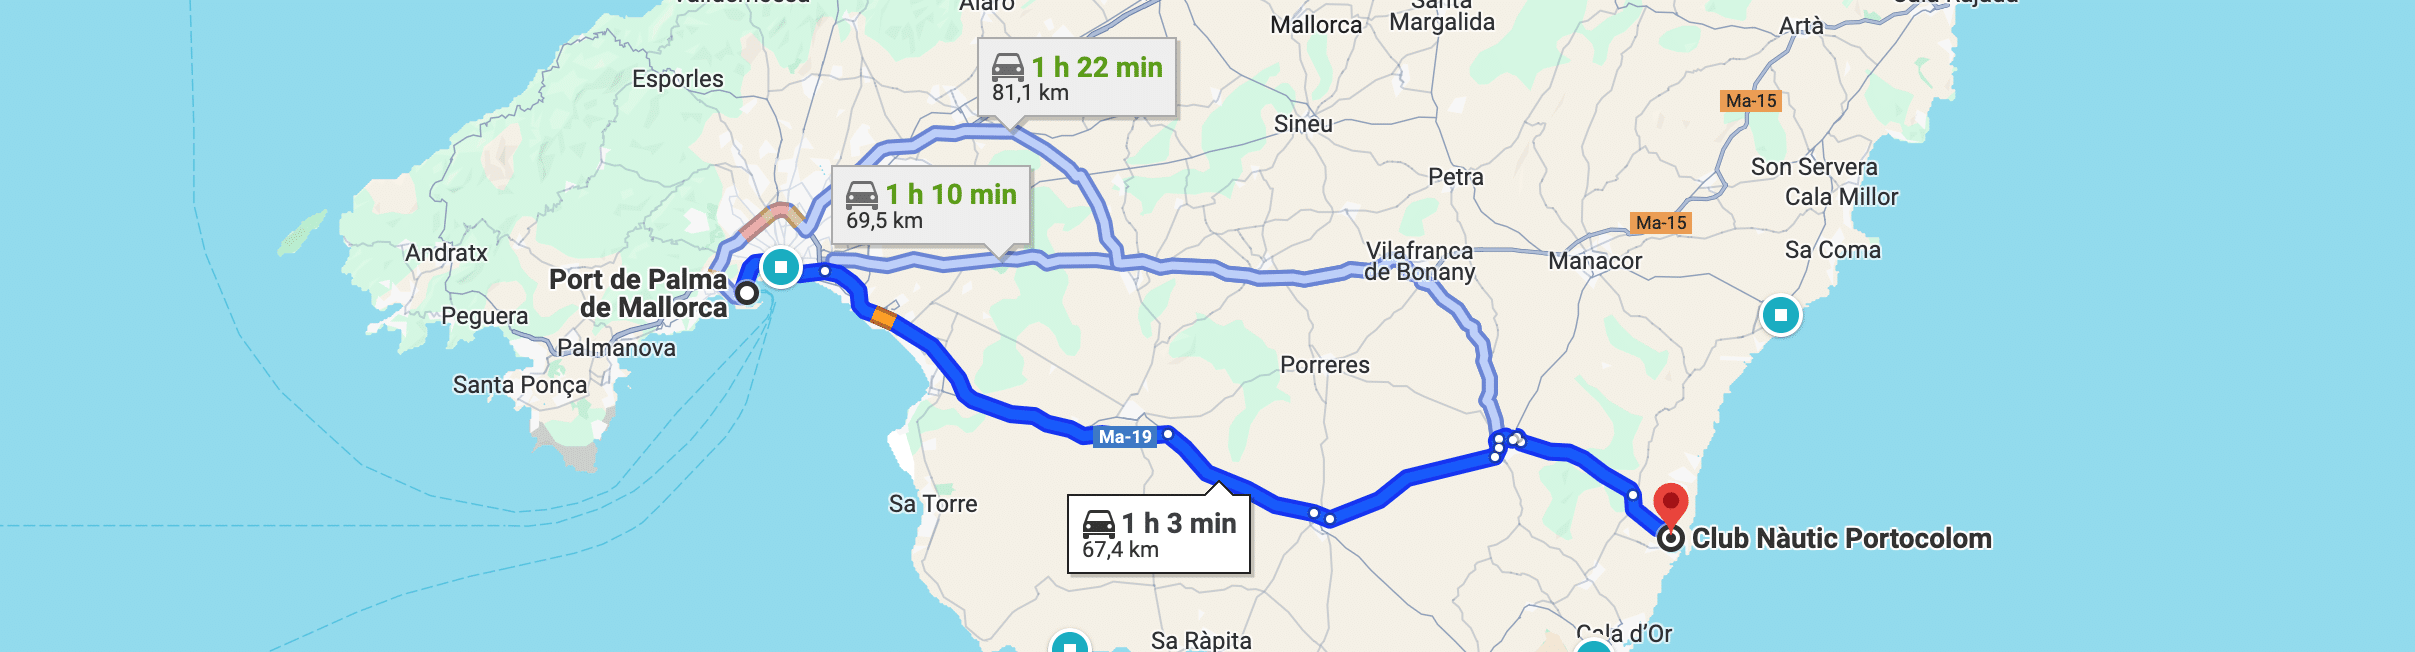 Eine Karte mit drei Routen vom Hafen von Palma de Mallorca zum Club Nàutic Portocolom. Die in diesen FAQ beschriebenen Routen sind zwischen 67,4 km und 85,1 km lang und dauern zwischen 1 Stunde 2 Minuten und 1 Stunde 13 Minuten. Wichtige Autobahnen und Städte sind entlang der Routen markiert.